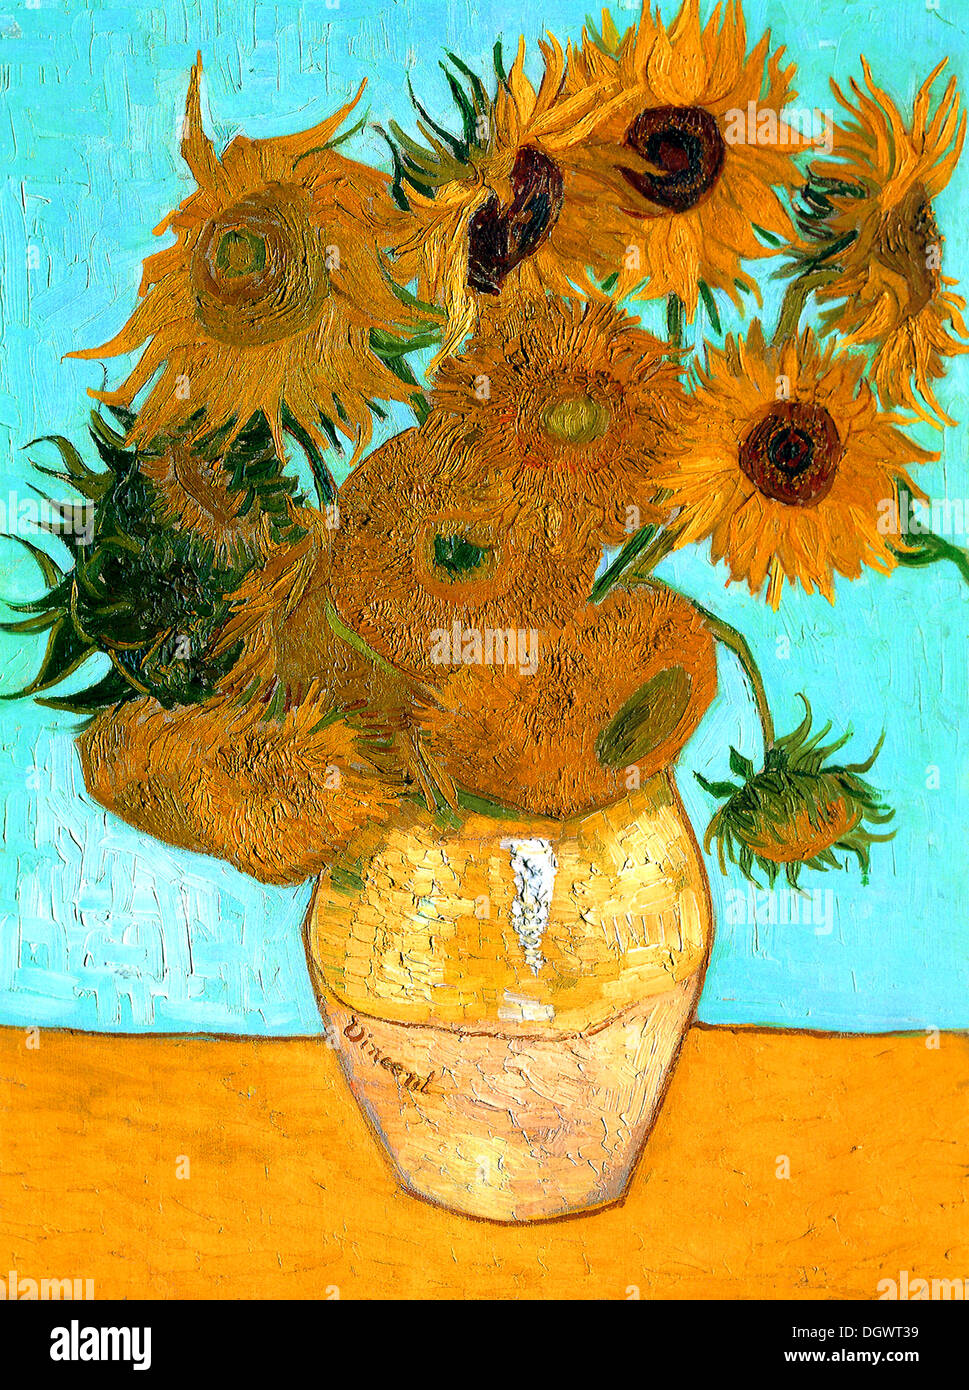 Les tournesols de Vincent van Gogh Banque D'Images